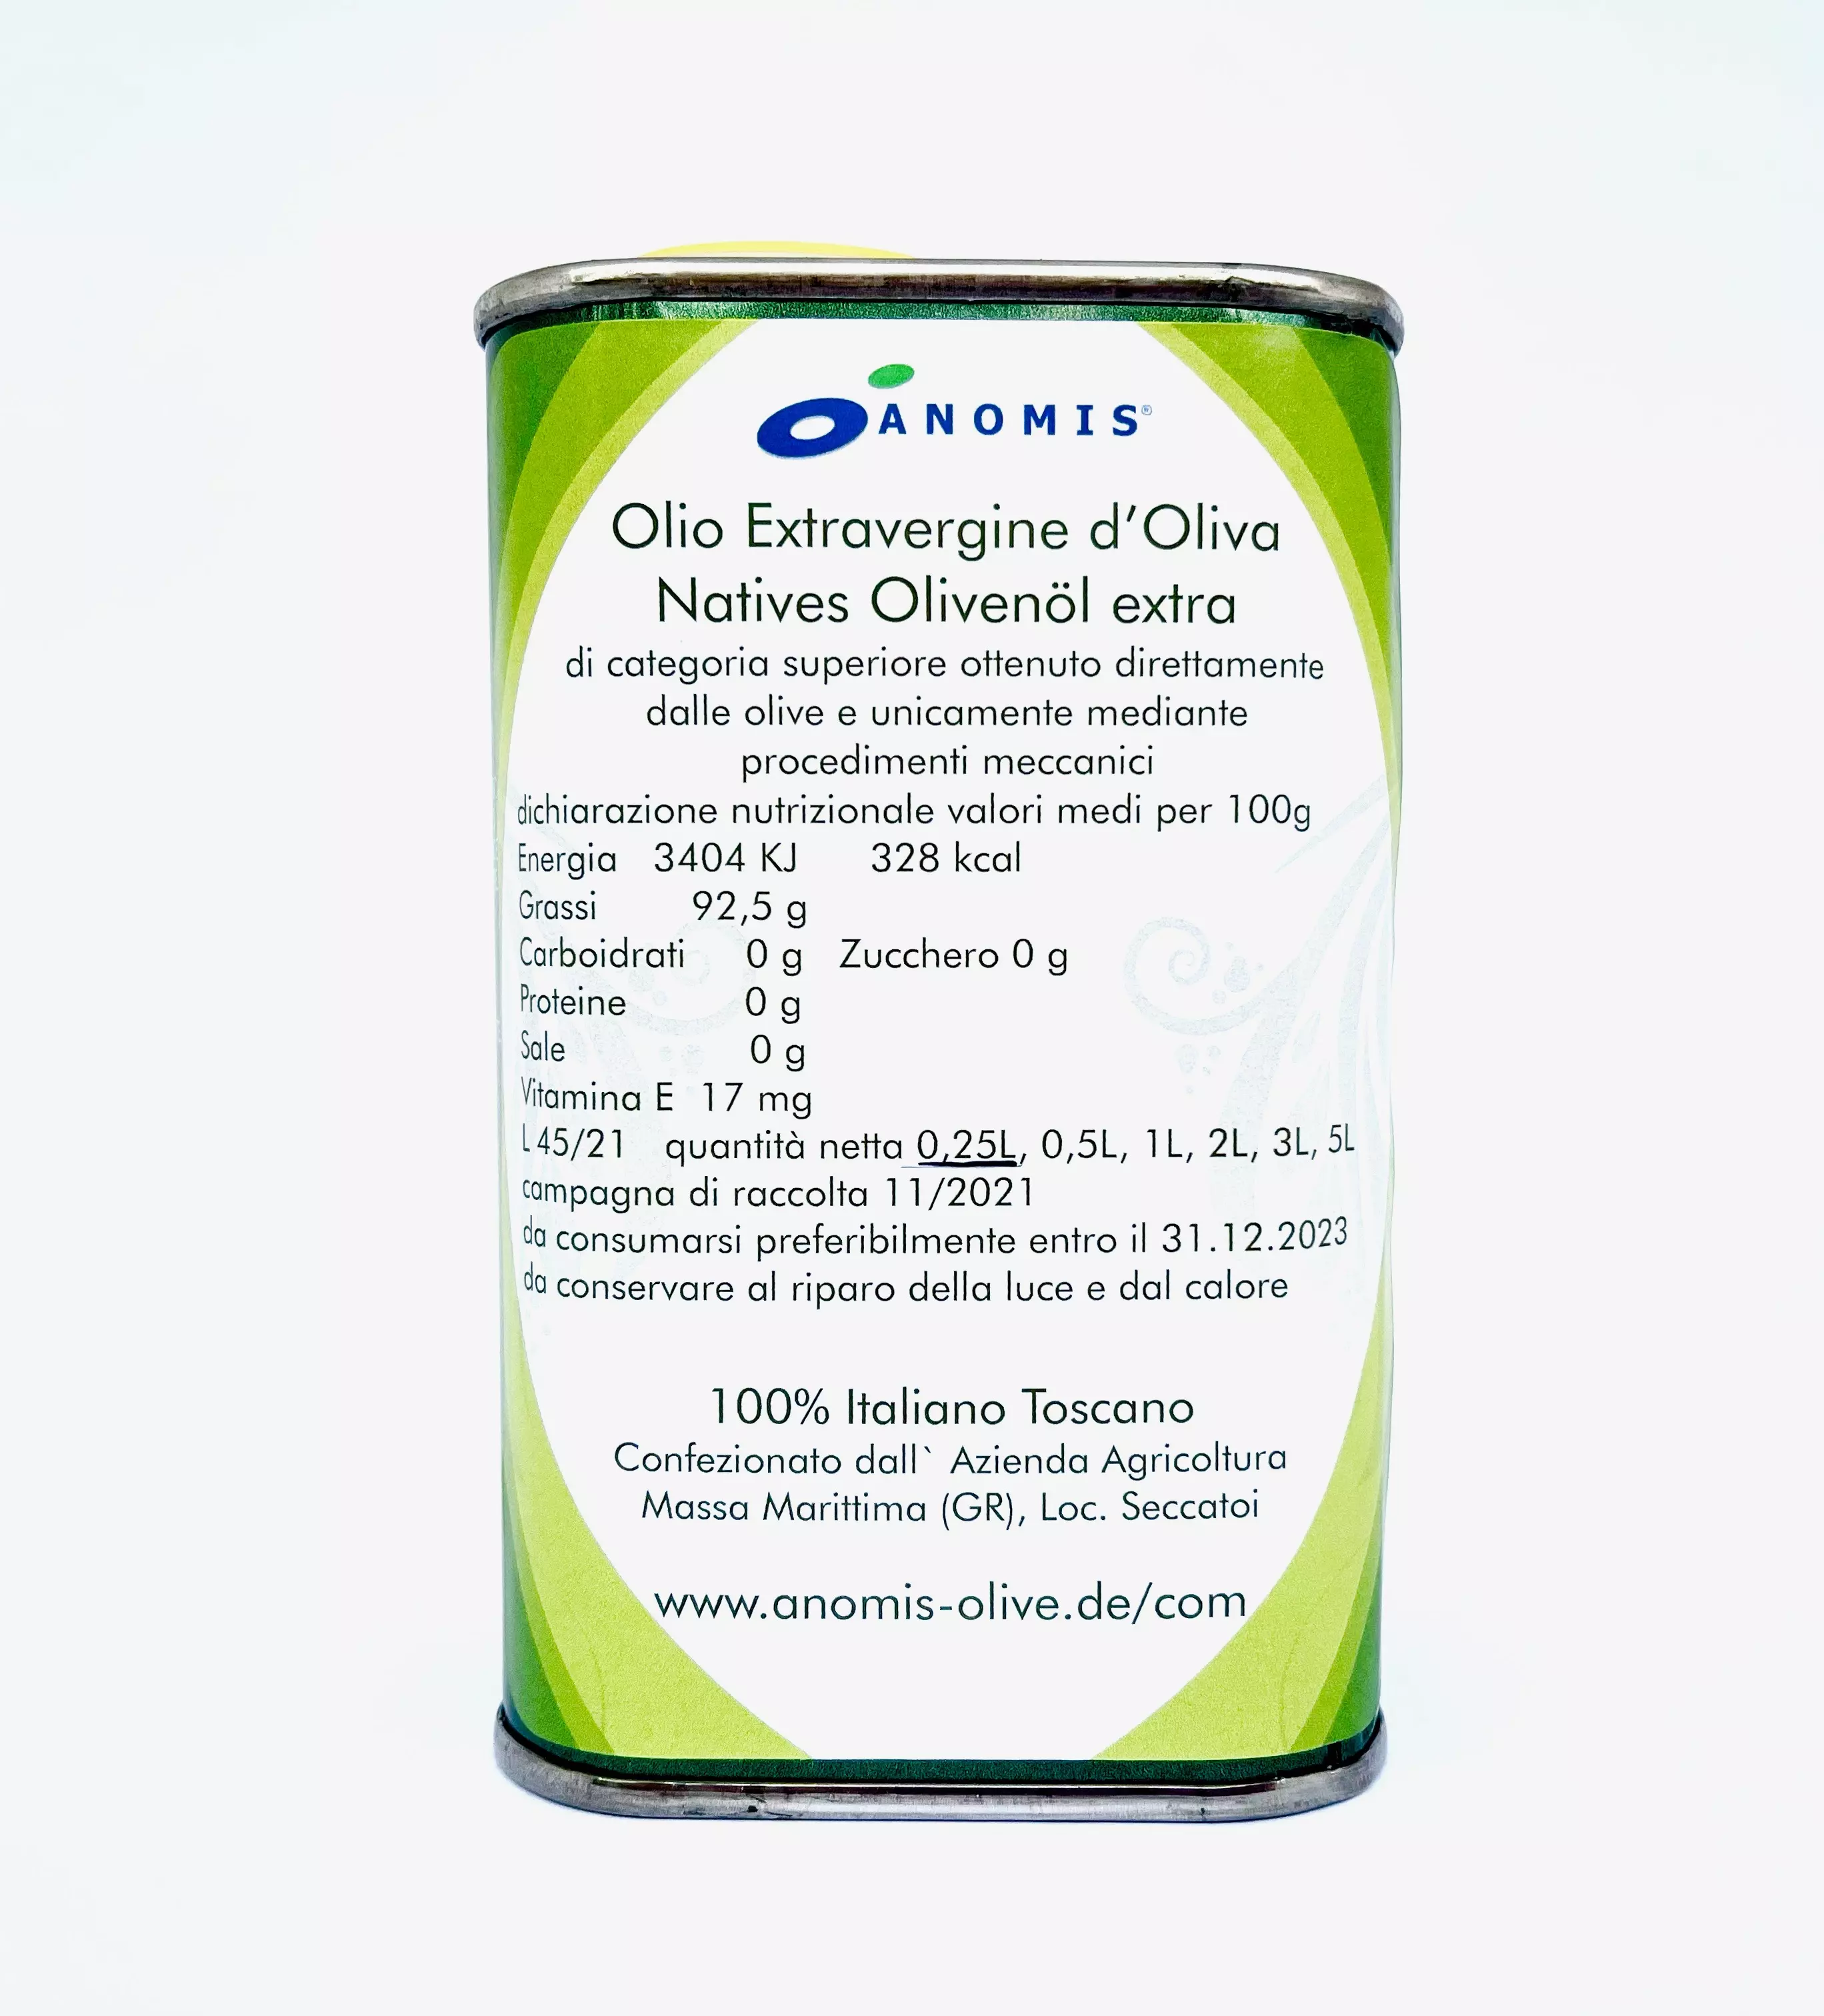 Olio Extravergine di Oliva - im 0,25 Liter Kanister - für Salat und Brot, Bruschetta -  100% Italiano Toscano